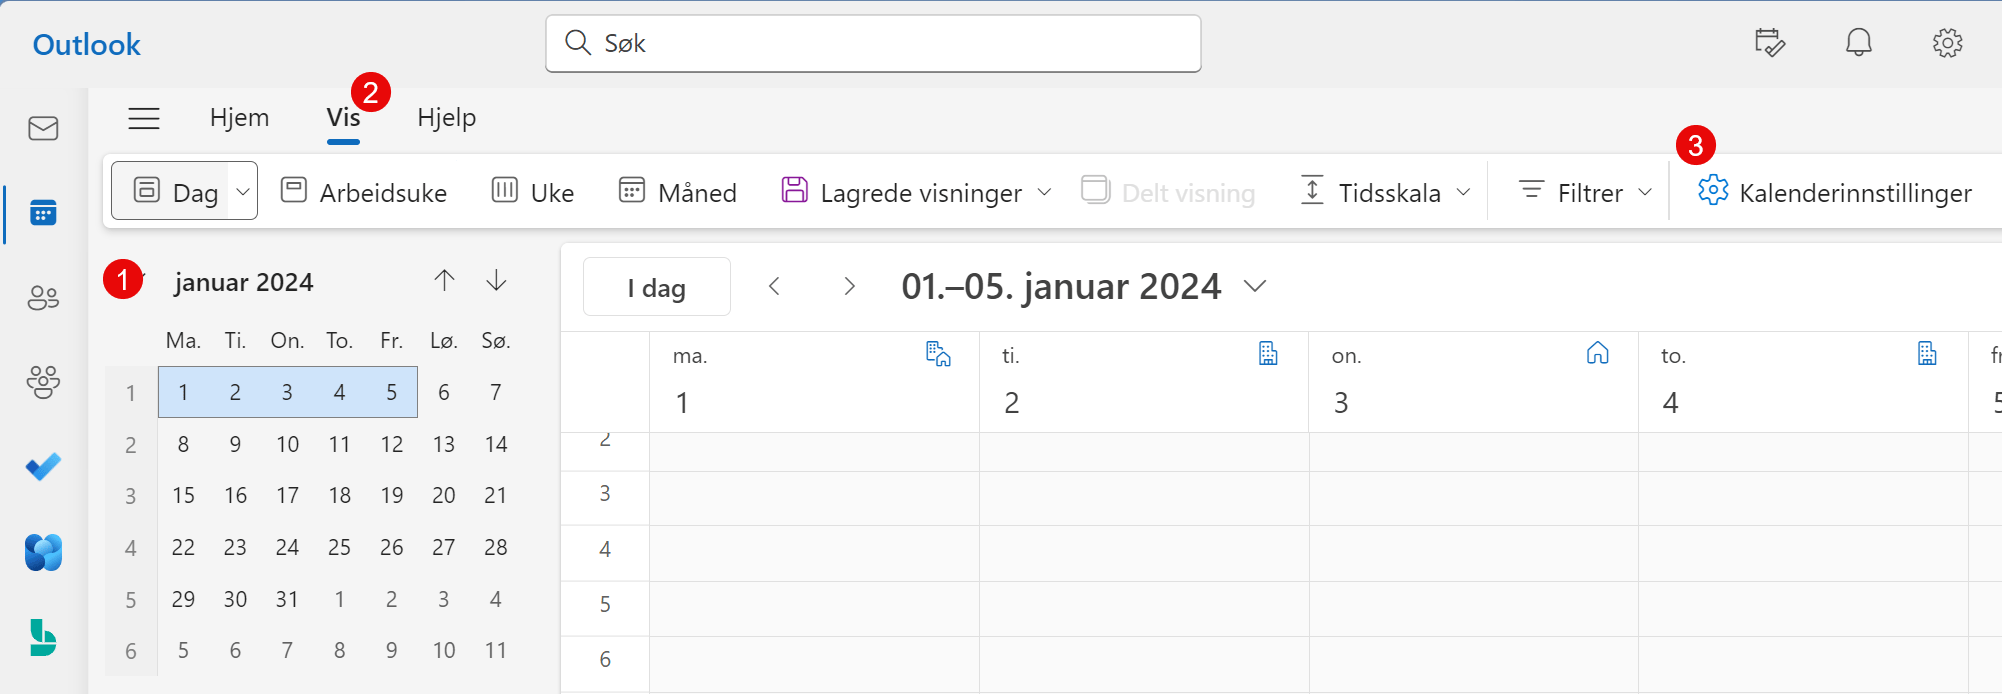 Nye Outlook - Vis avslått møte i kalenderen 2